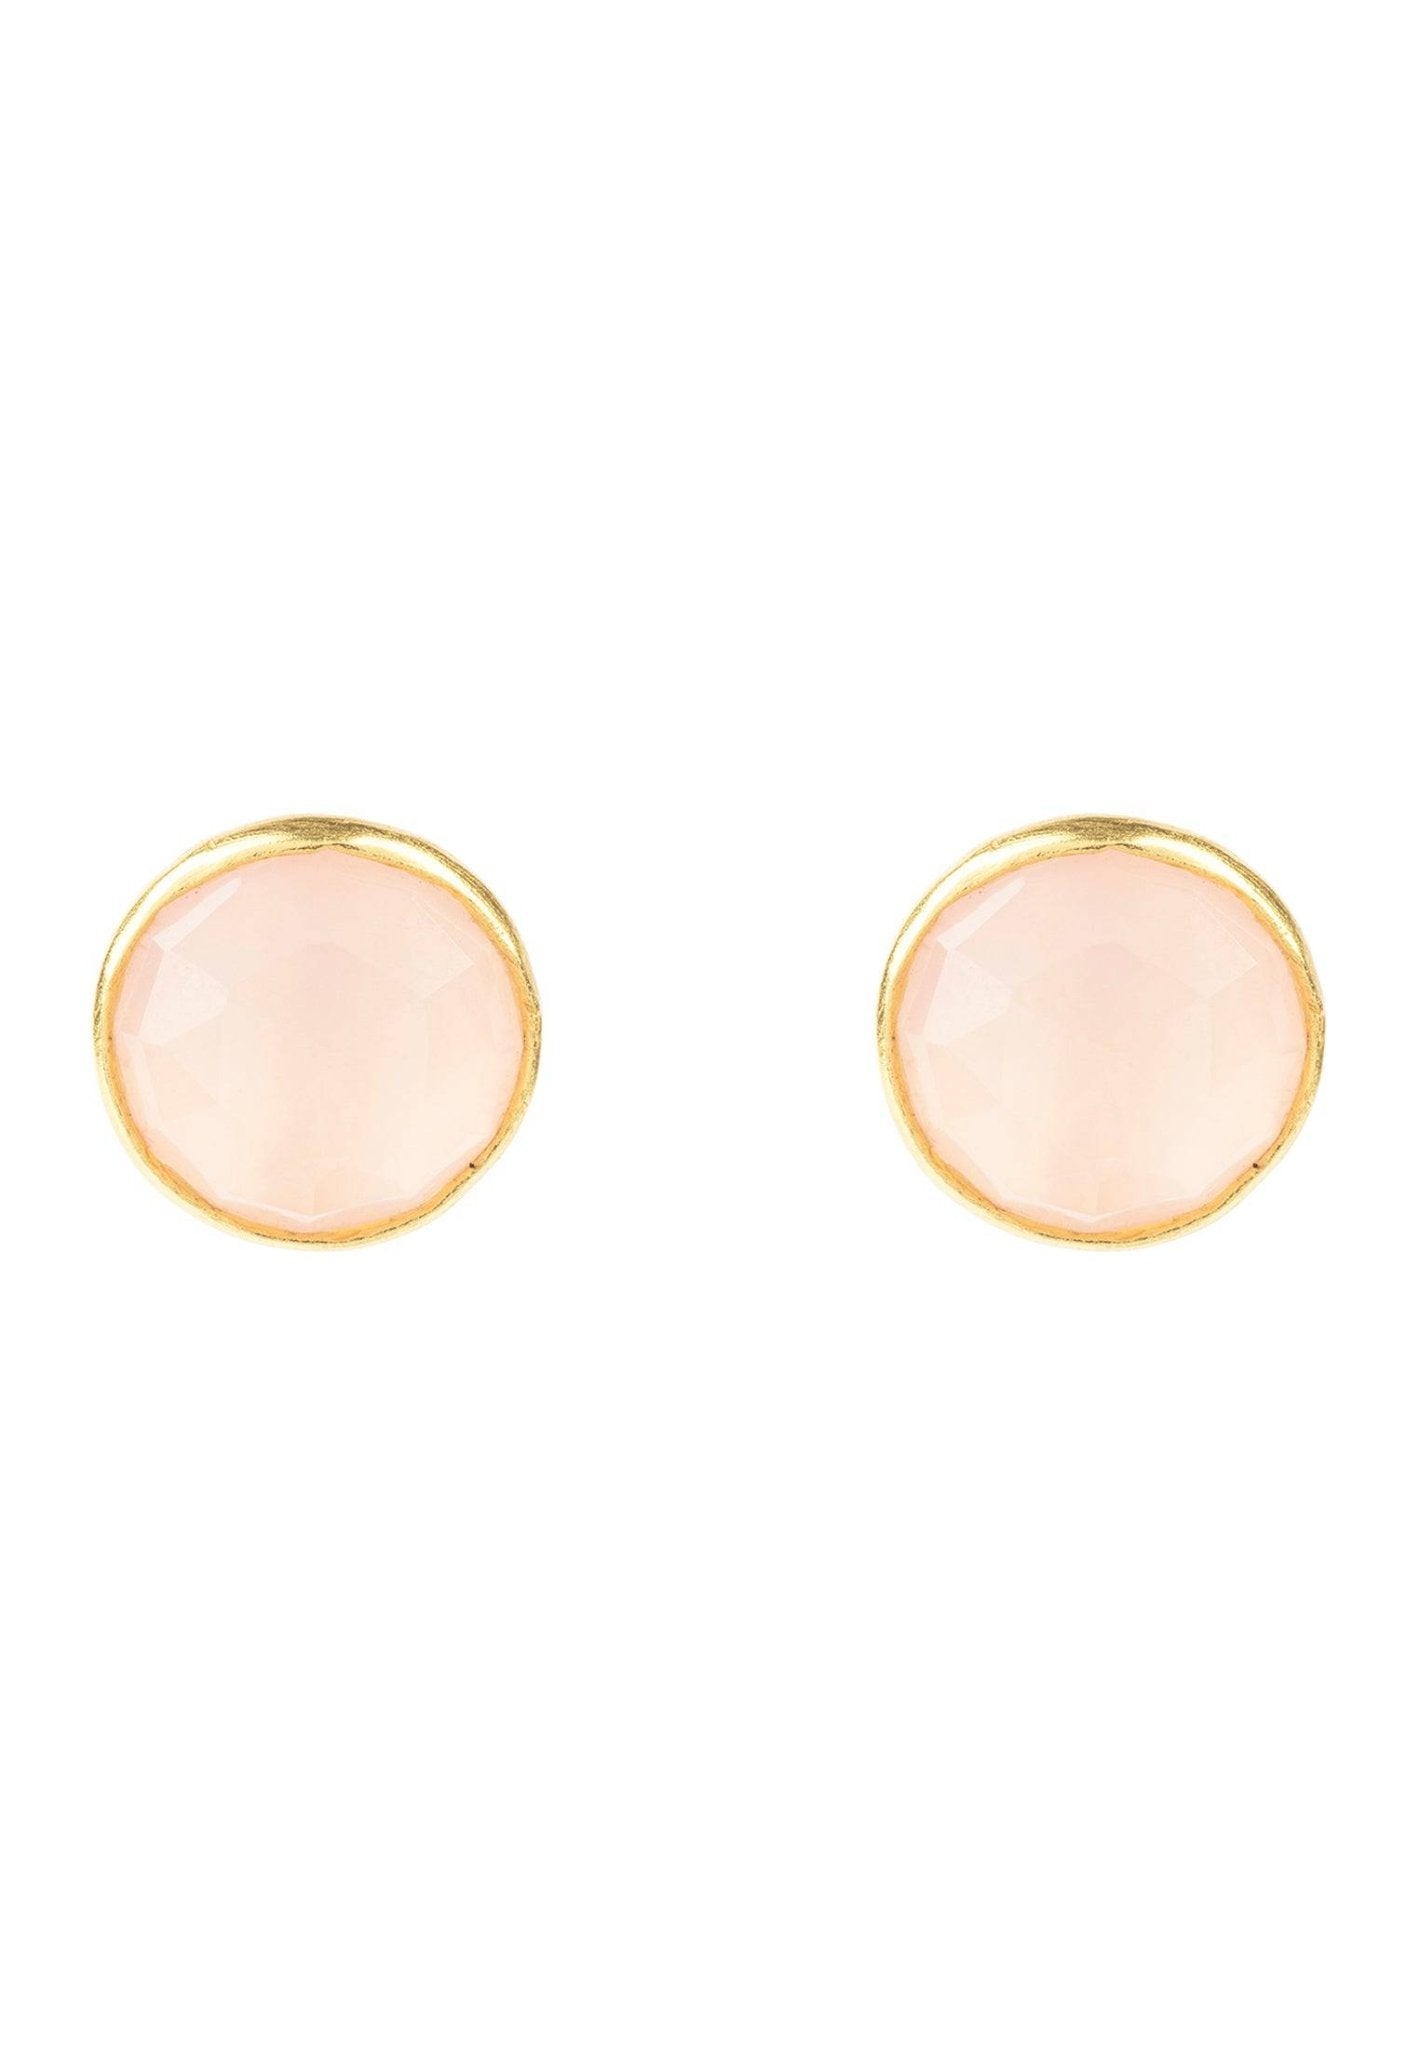 Medium Circle Gemstone Earrings Gold Rose Quartz - LATELITA Earrings